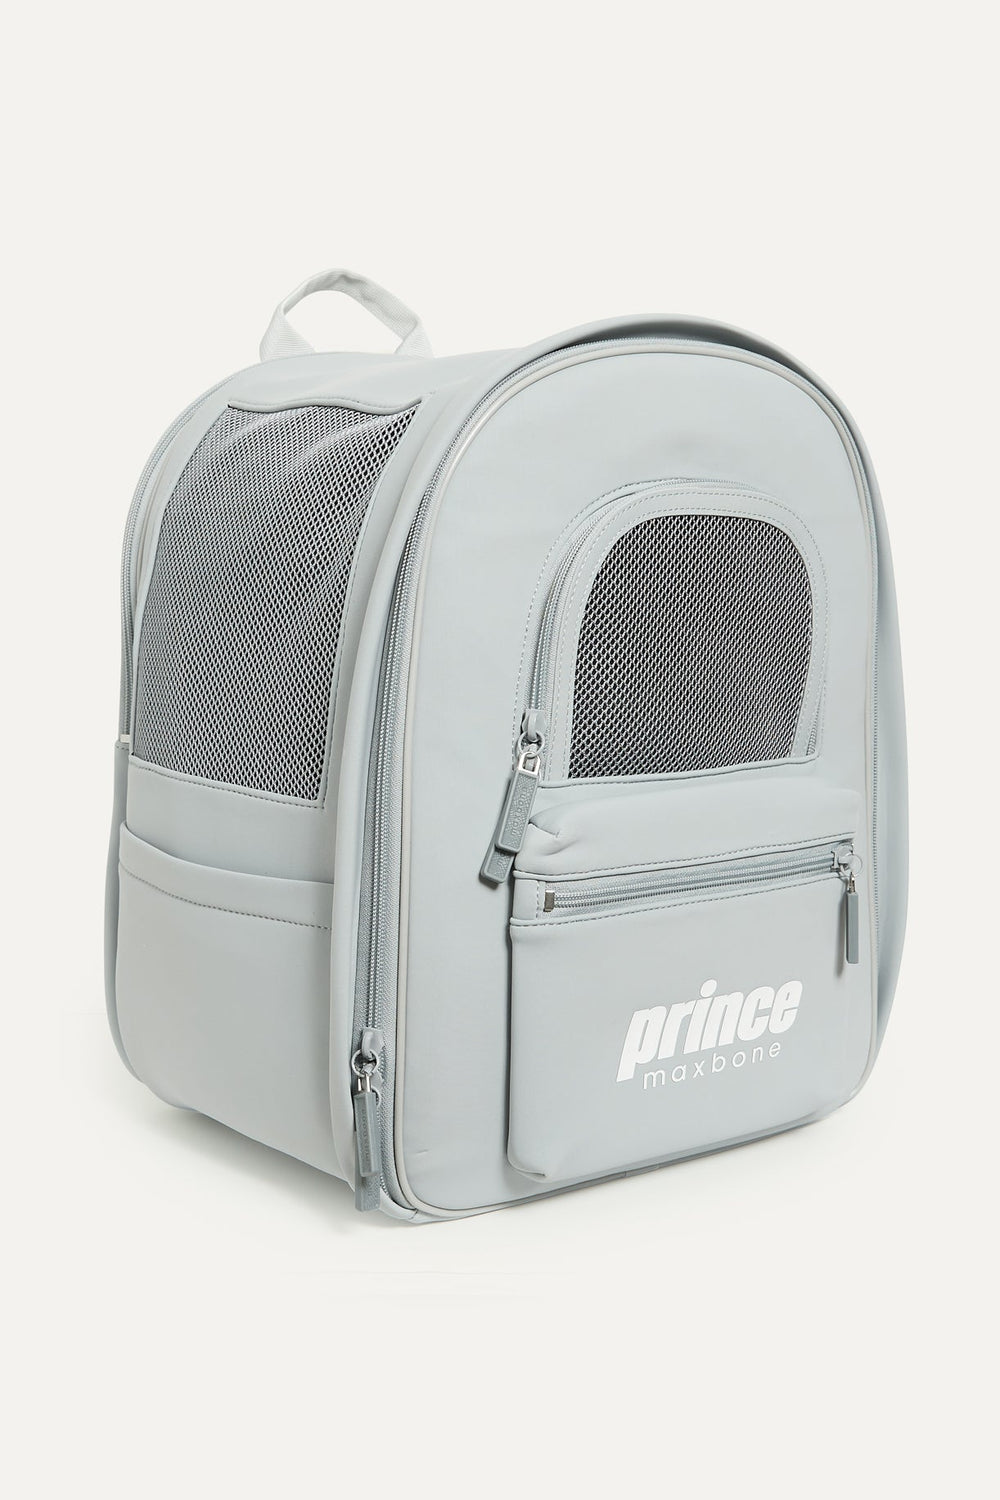 maxbone x Prince Backpack - maxbone